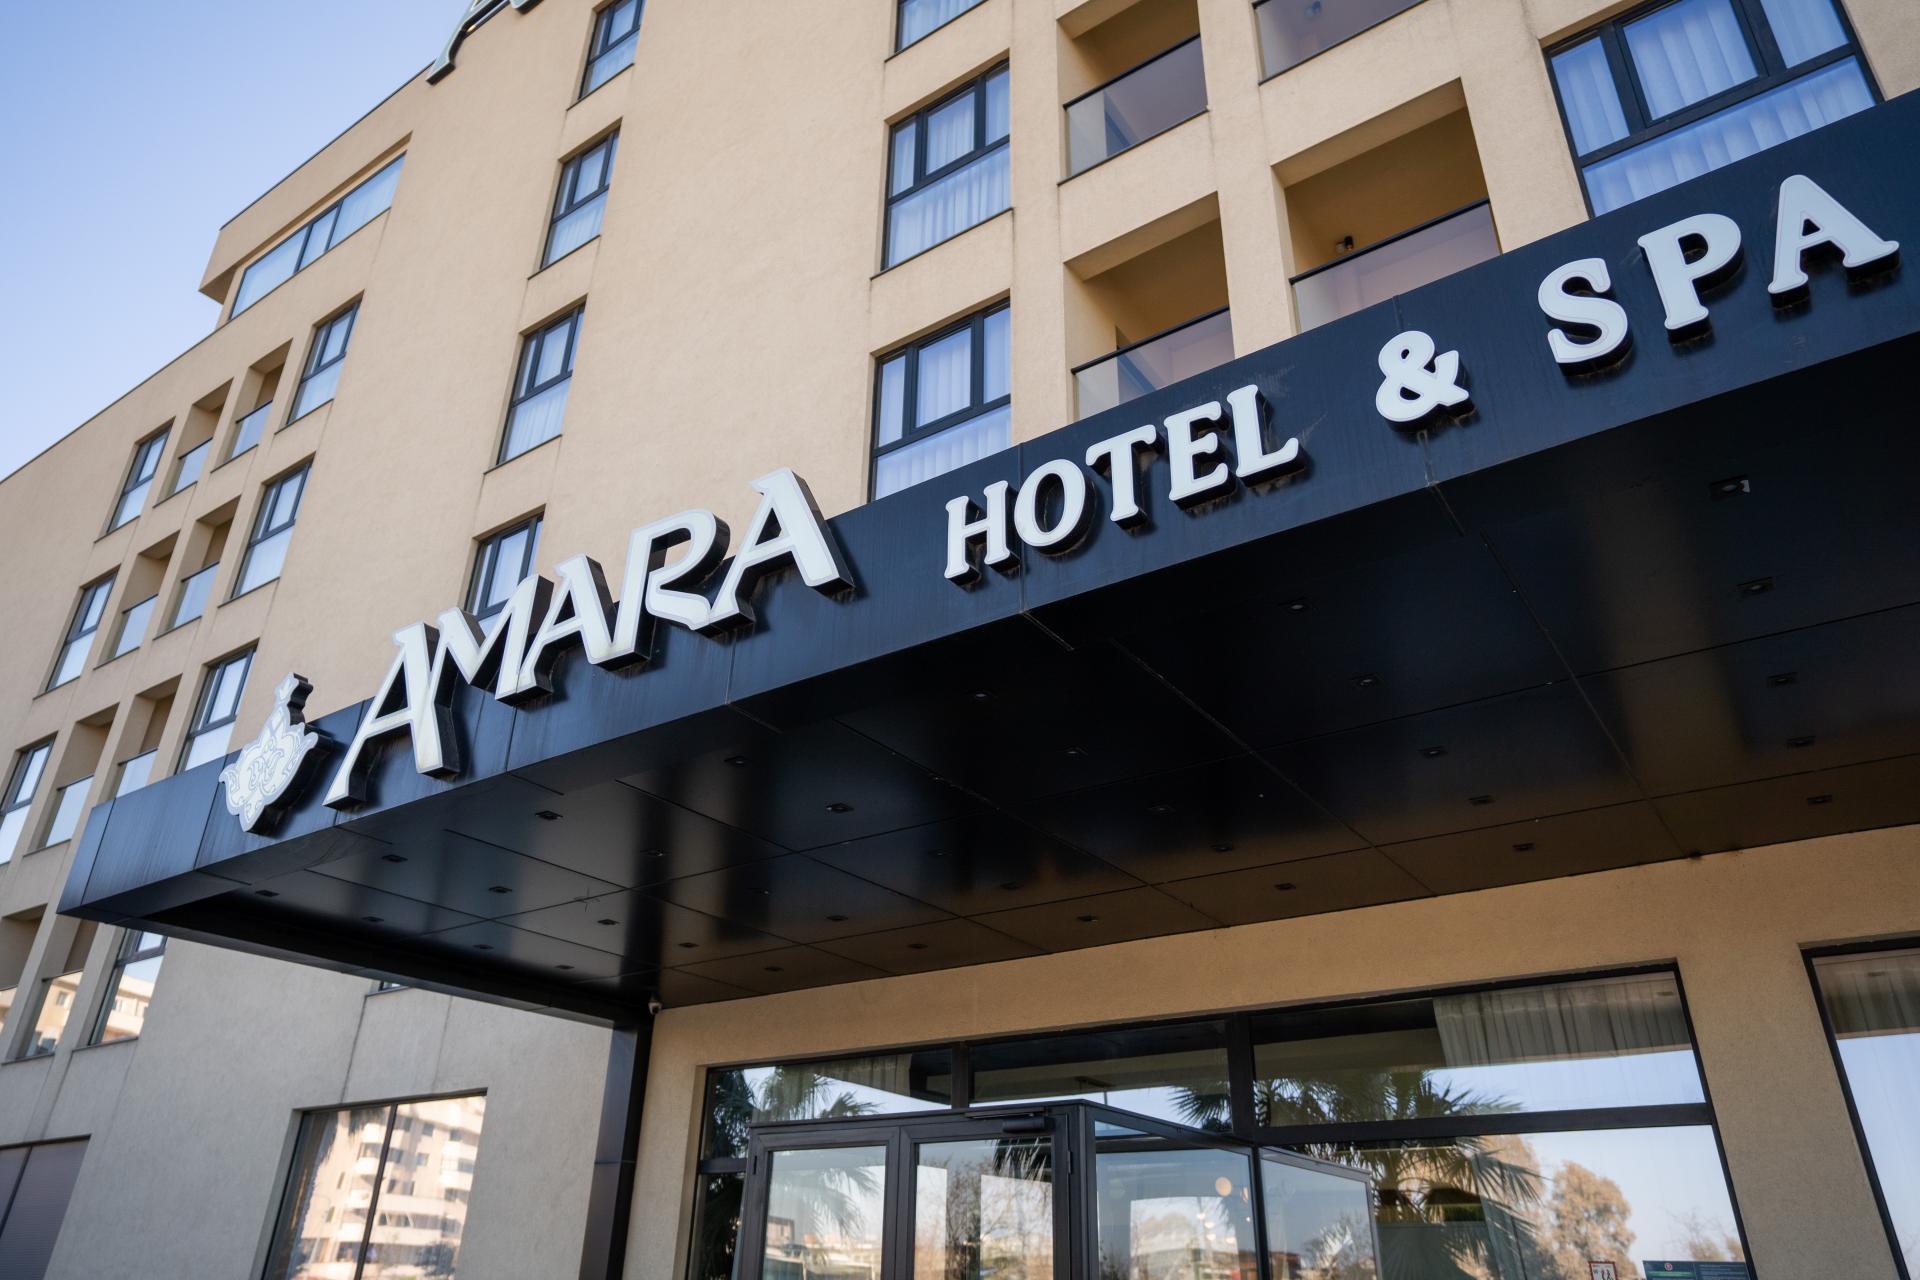 Hotel Amara - Poznaj Albanię z Rego-Bis! - Albania